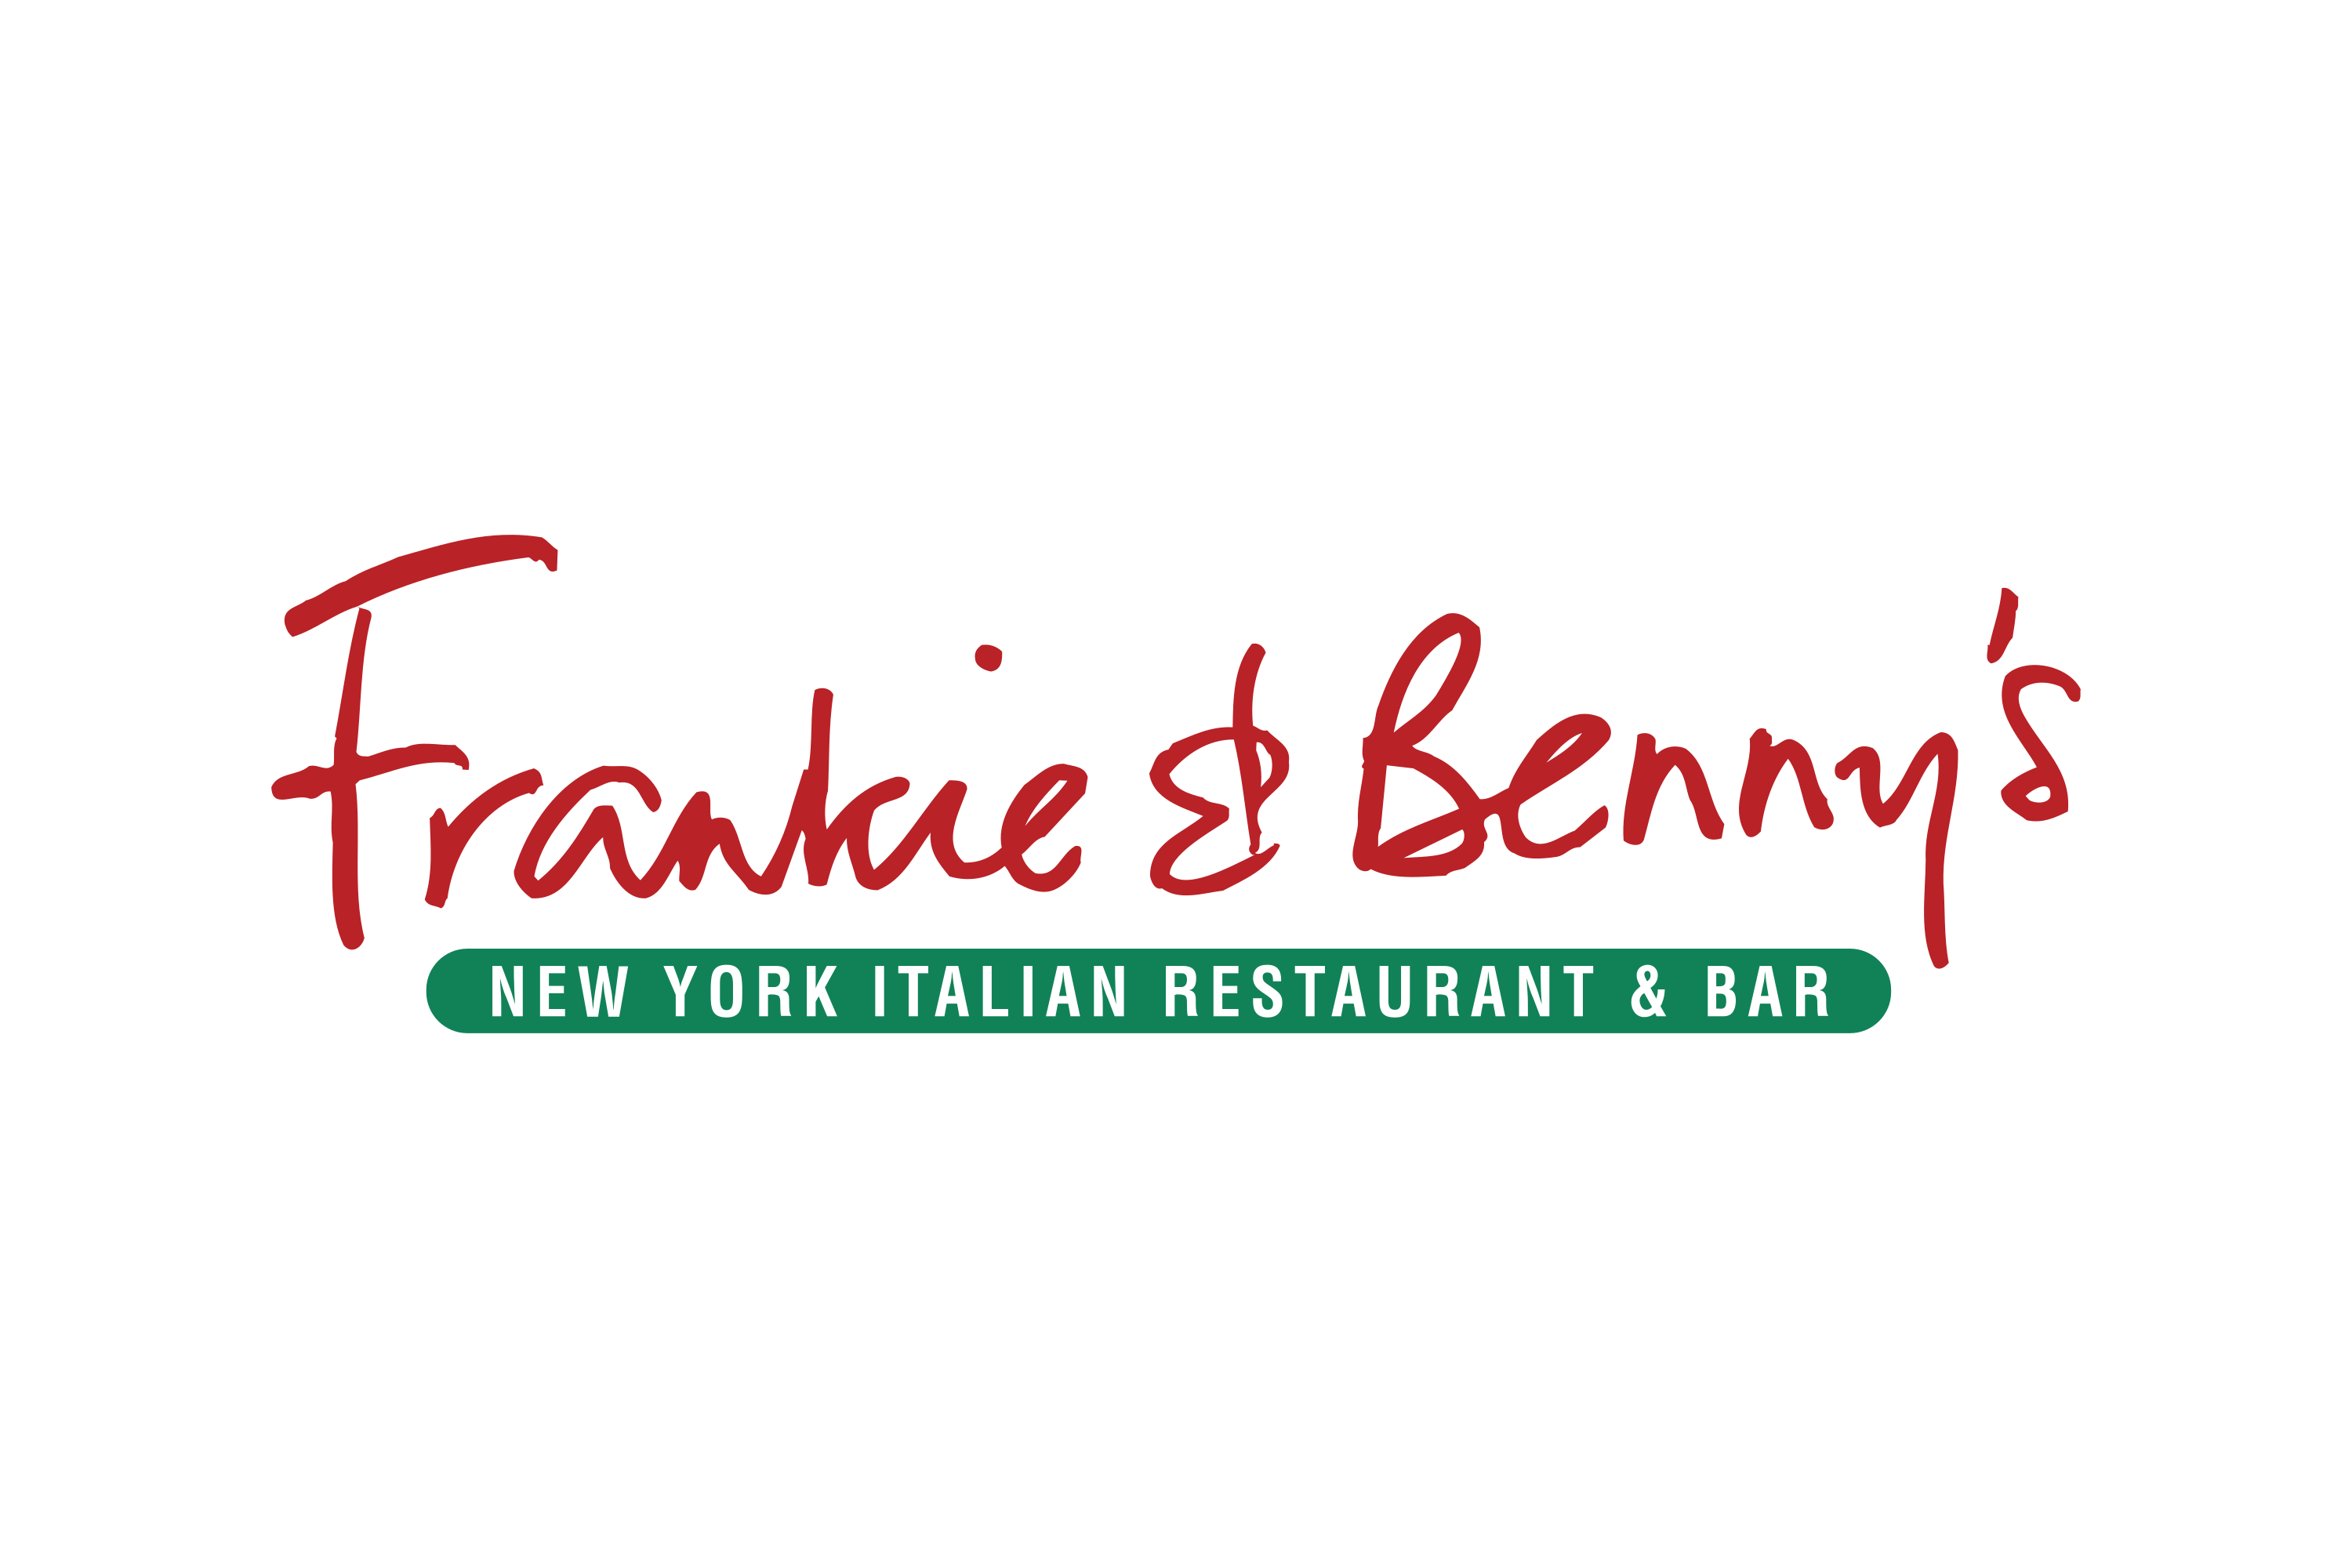 Frankie and Benny’s Logo